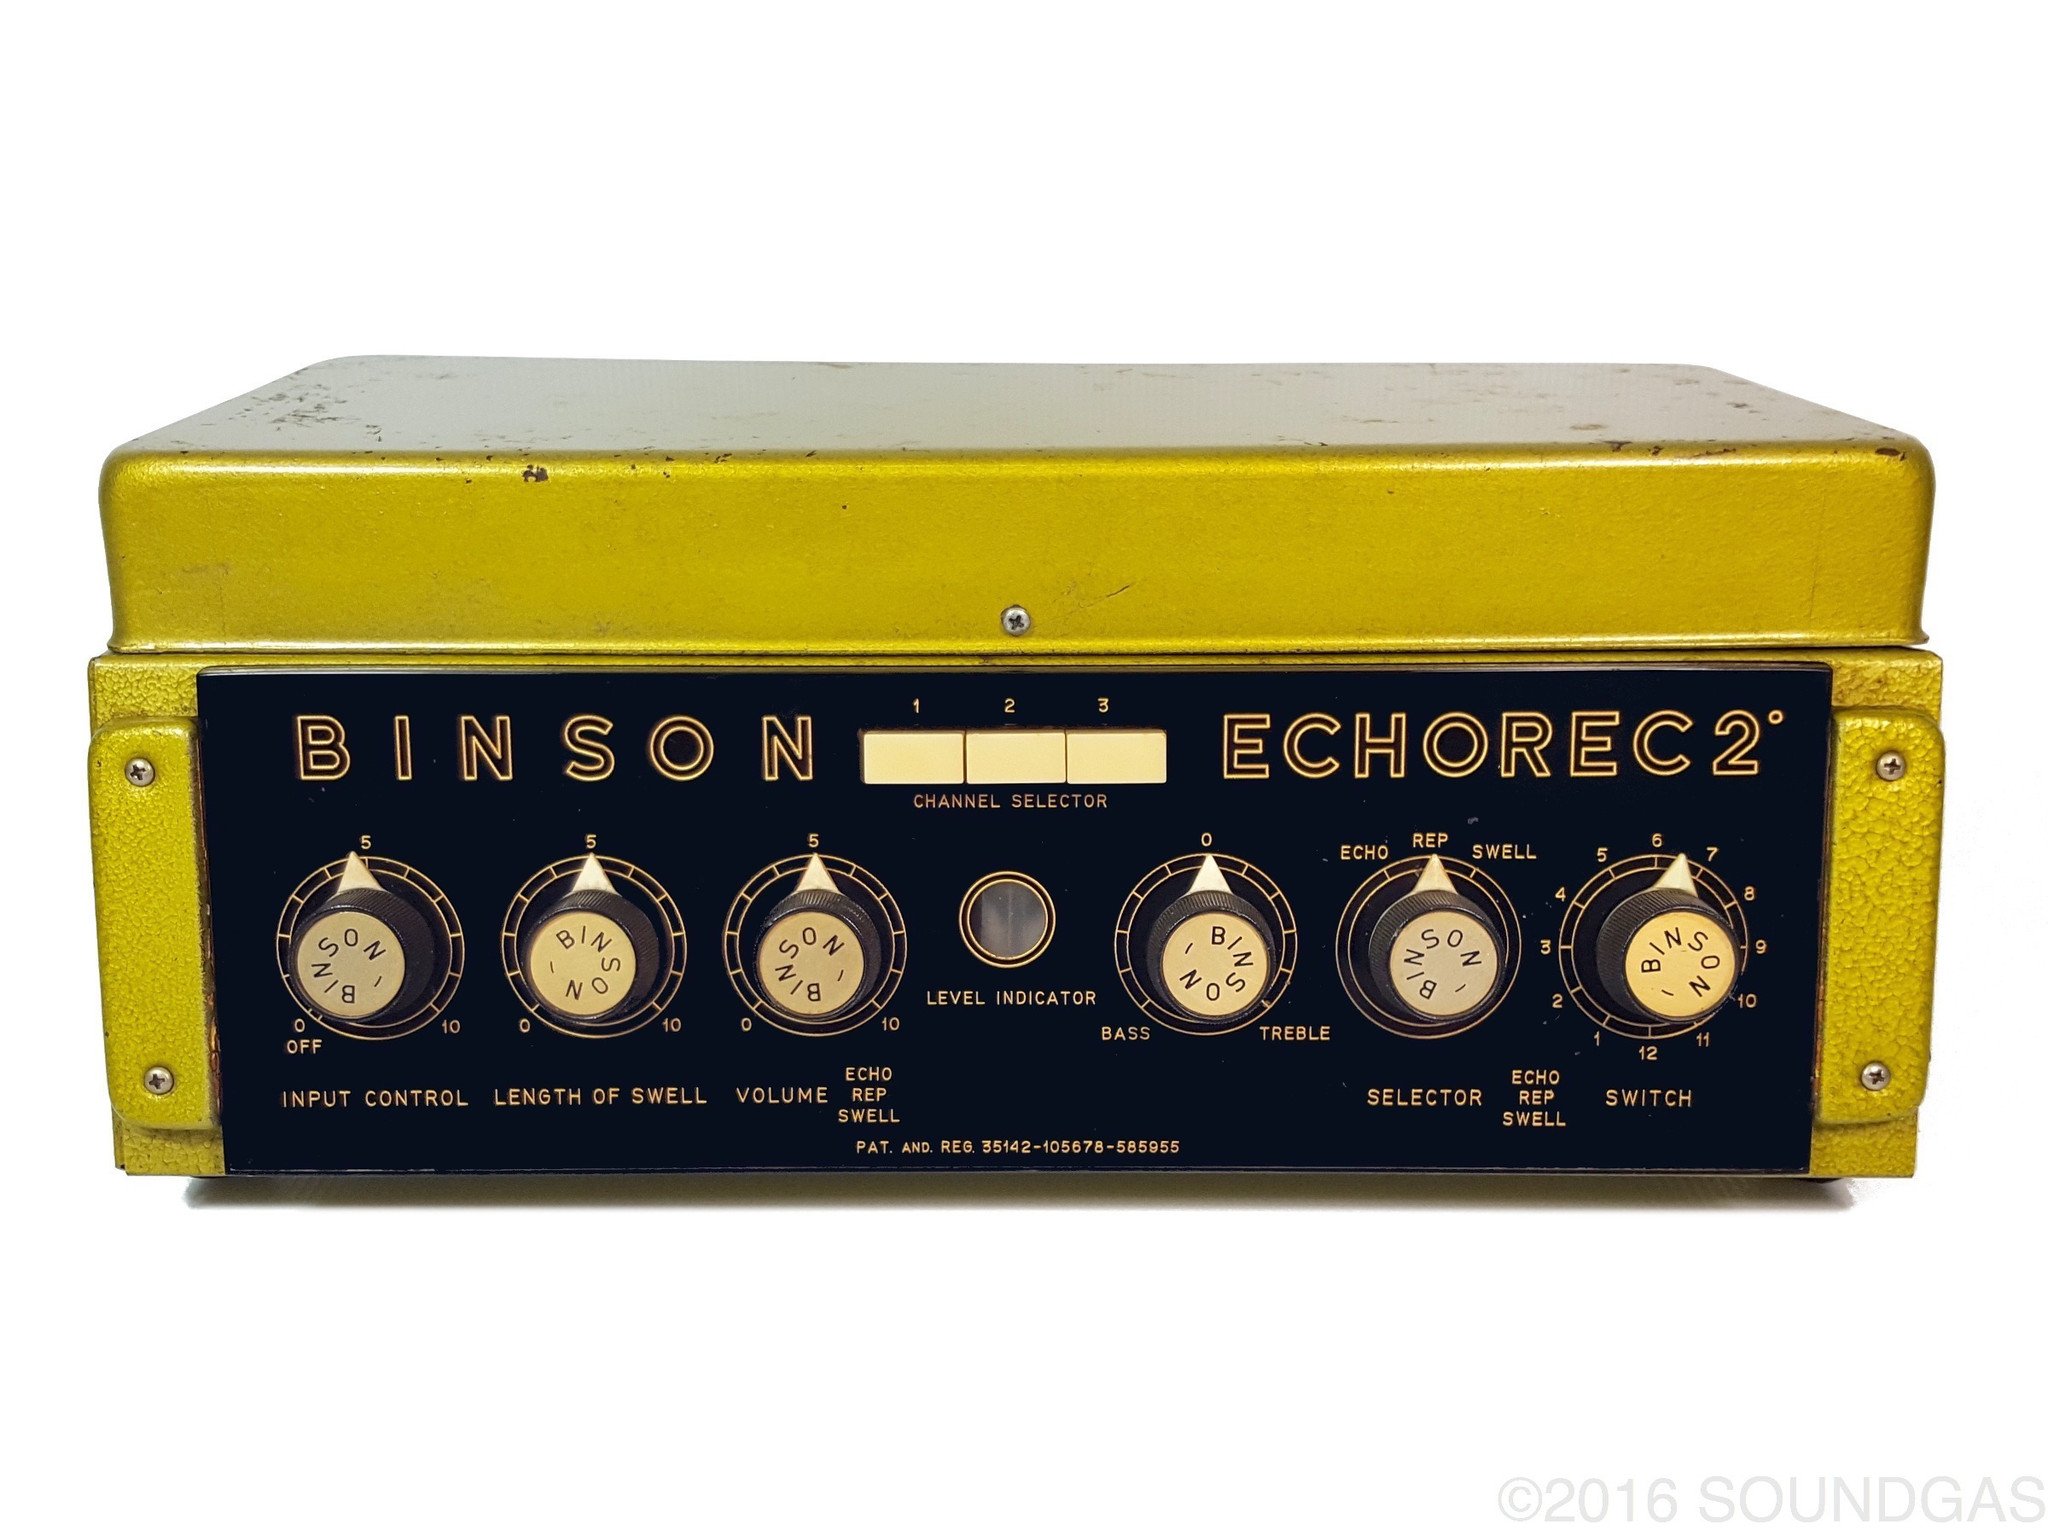 BINSON ECHOREC 2 T7E - Serviced & ready now